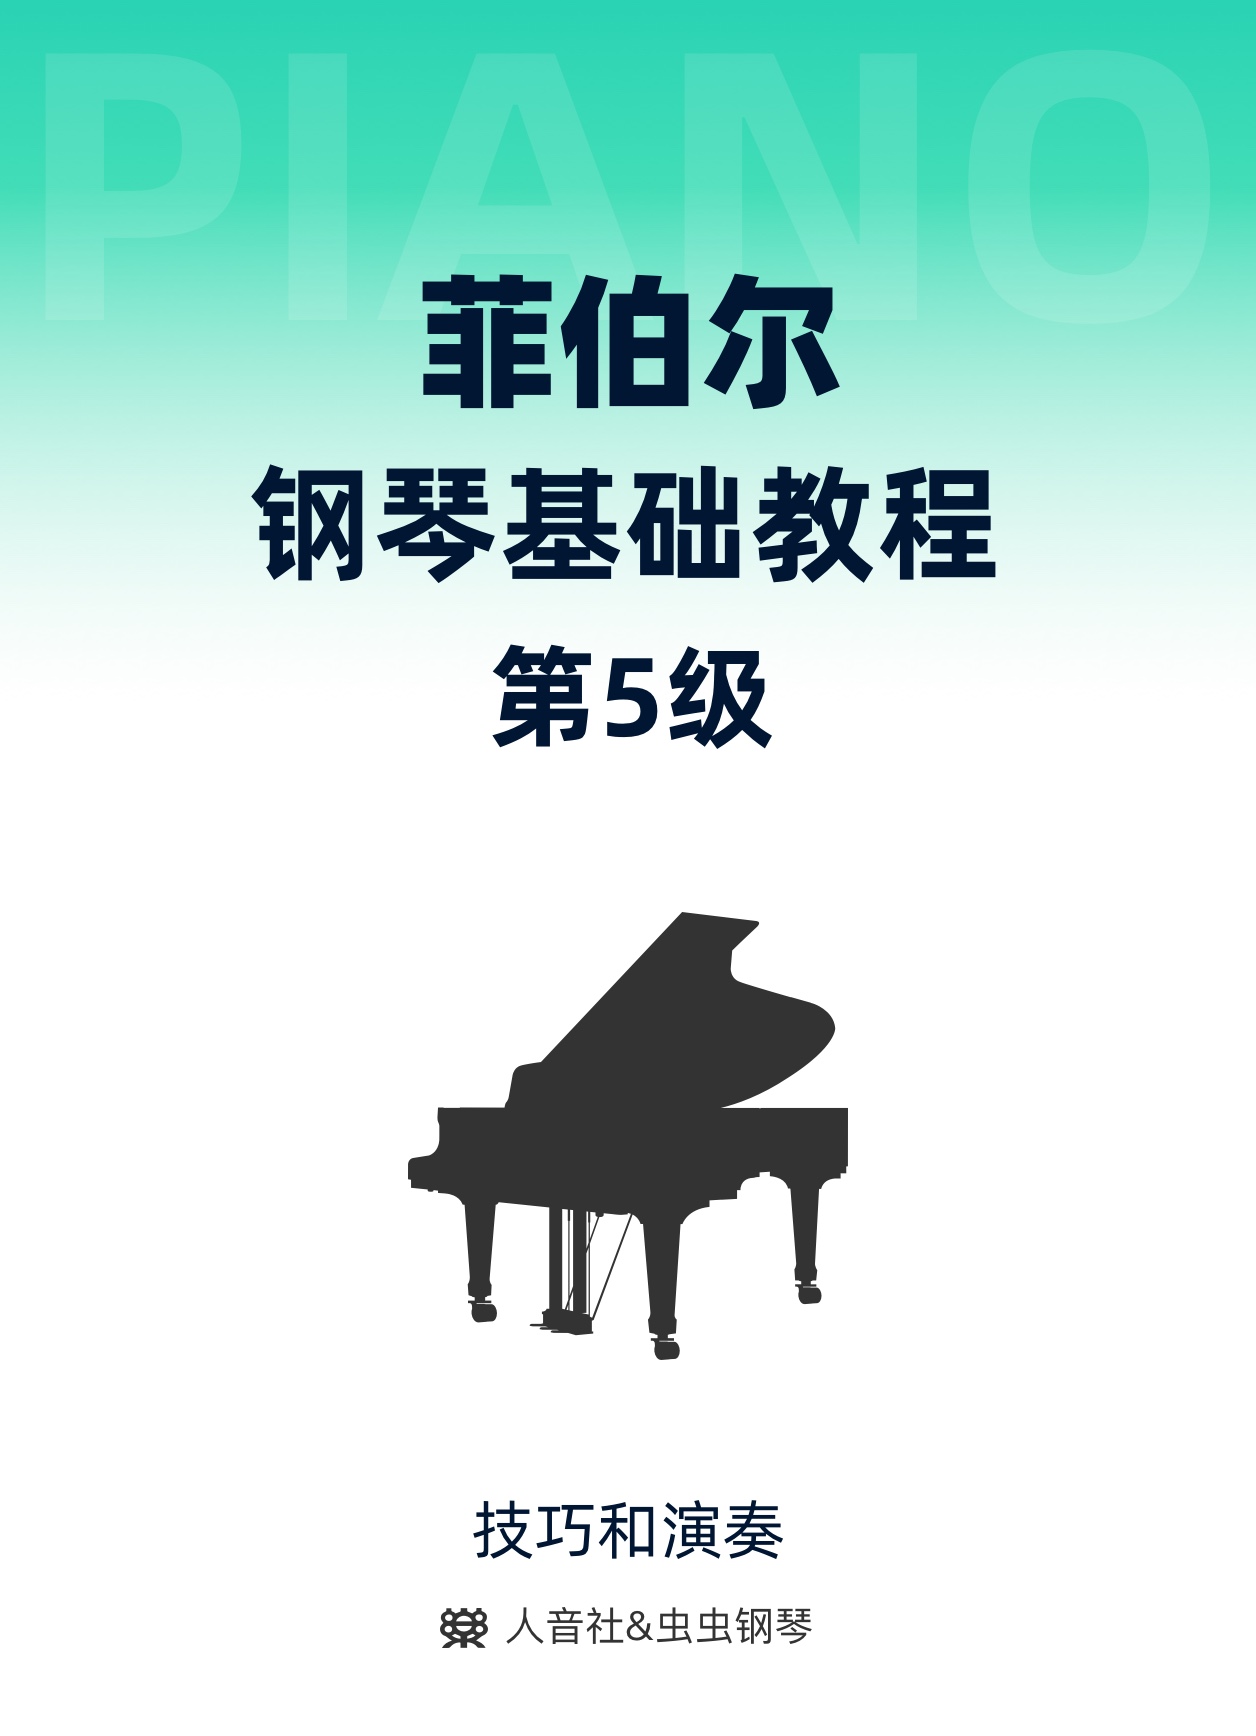 07-阿尔贝蒂低音-V7和弦钢琴简谱 数字双手